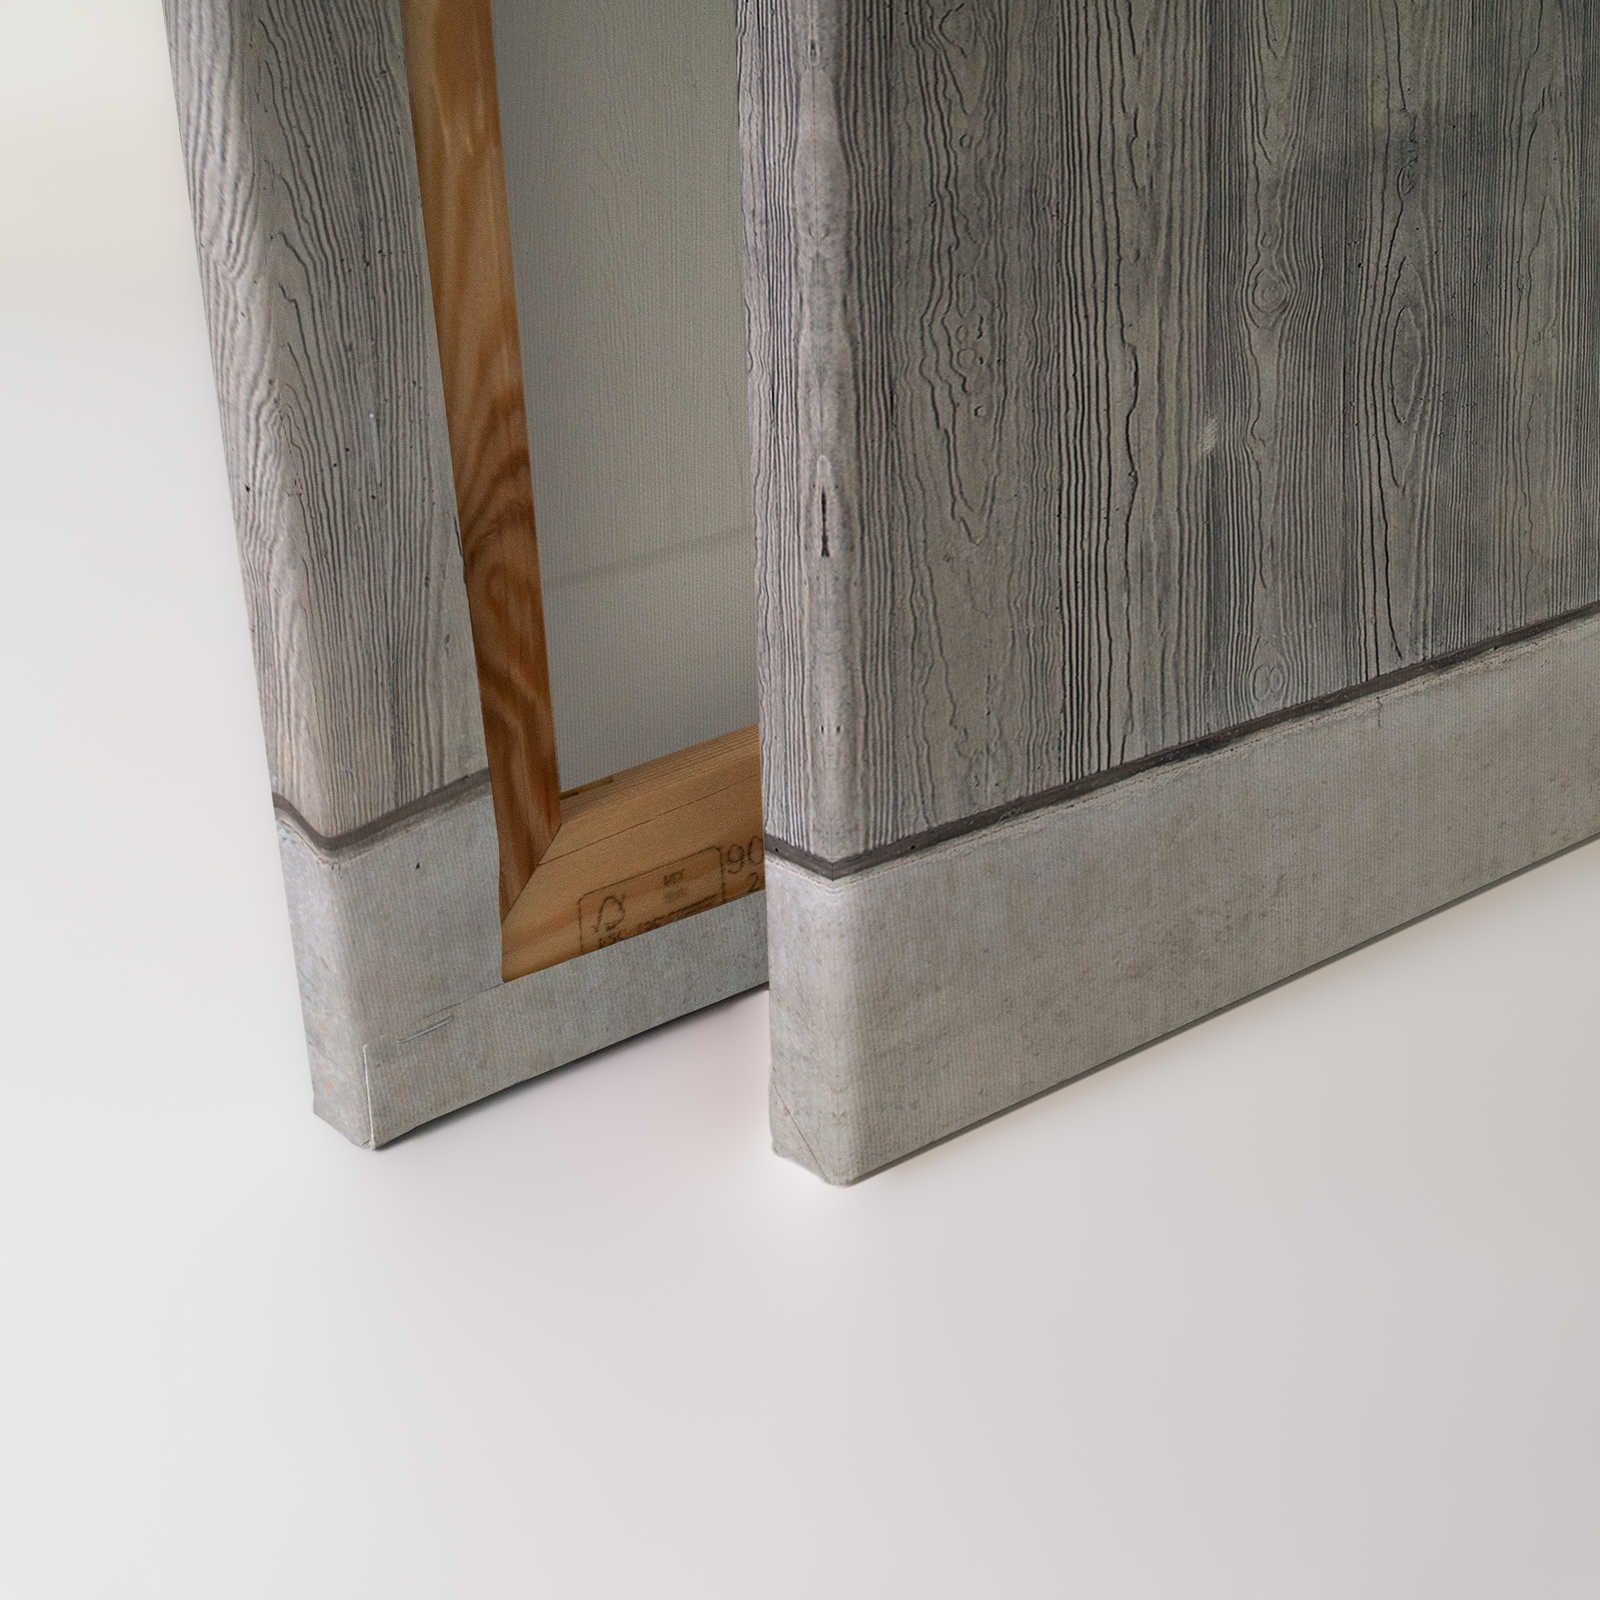             Betonplatten Leinwandbild mit Bretterschalung und Holzmaserung – 0,90 m x 0,60 m
        